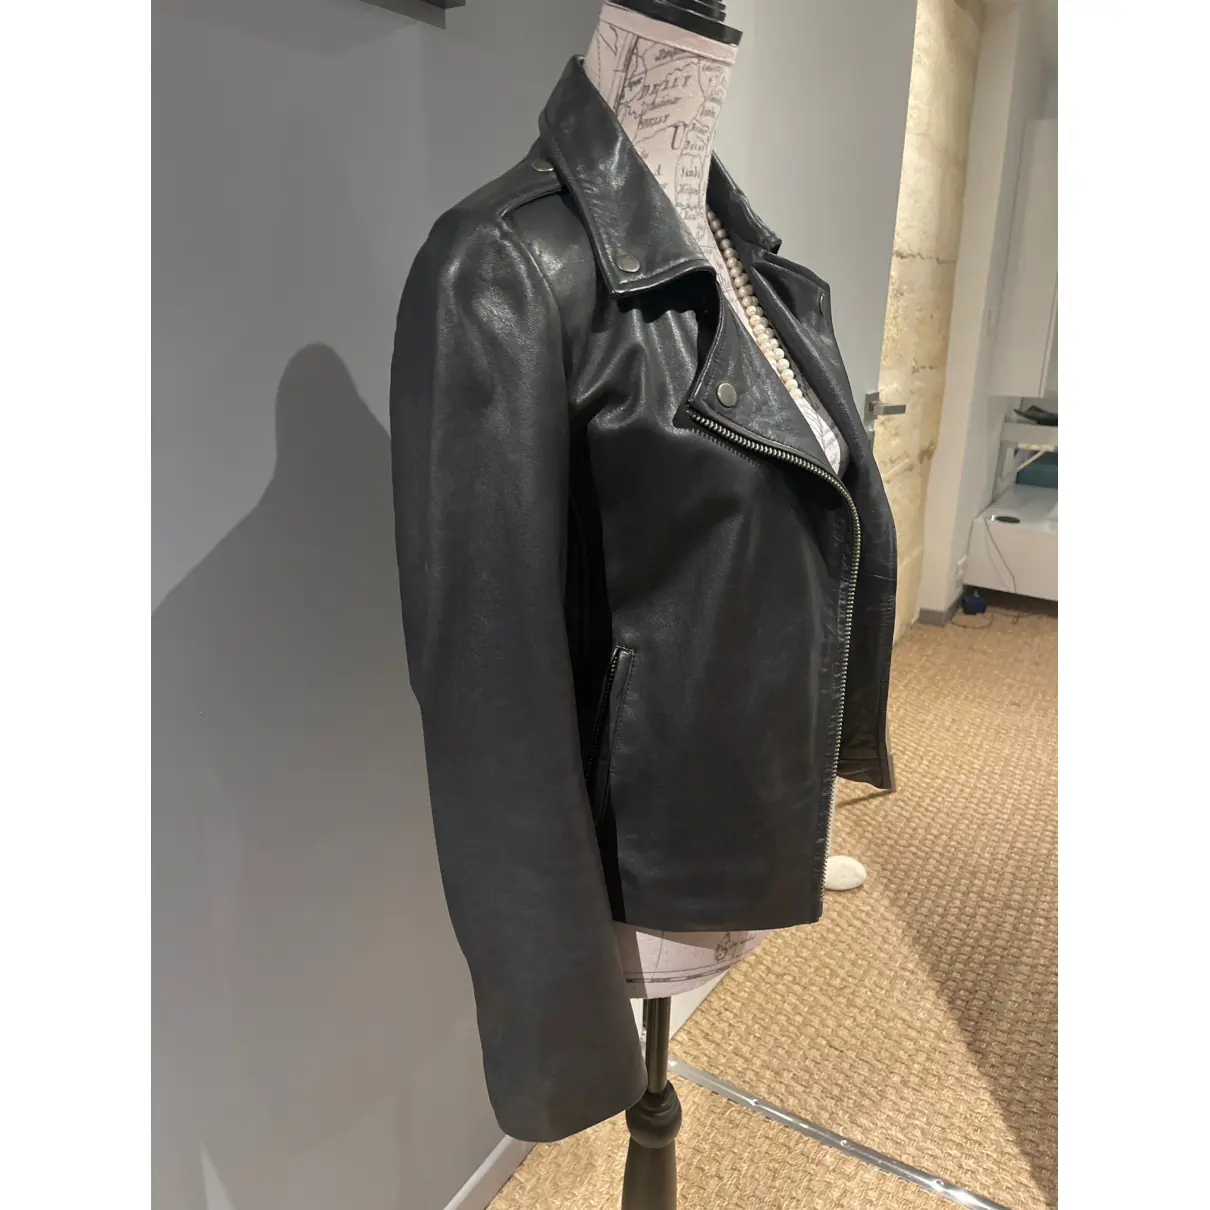 Buy SERGE PARIENTE Leather jacket online